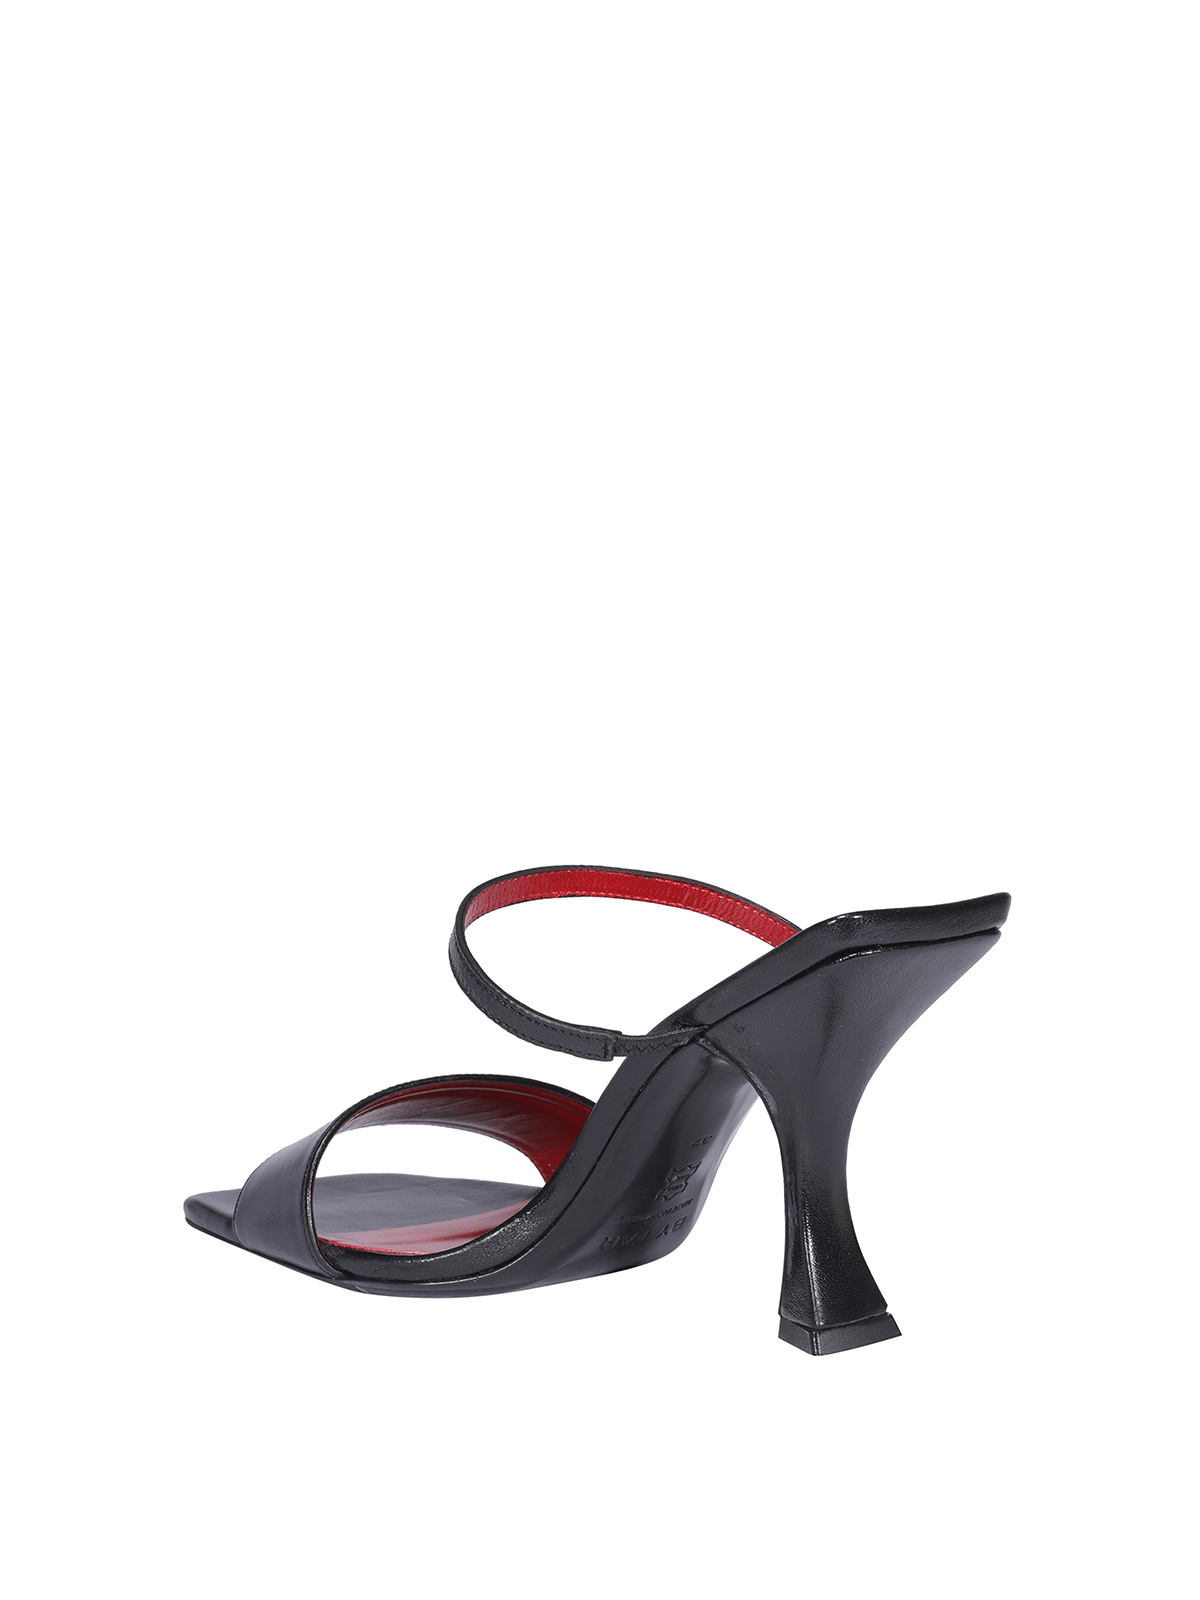 Sandals By Far - Nayla sandals - 21CRNAYSBLCREBL | Shop online at iKRIX